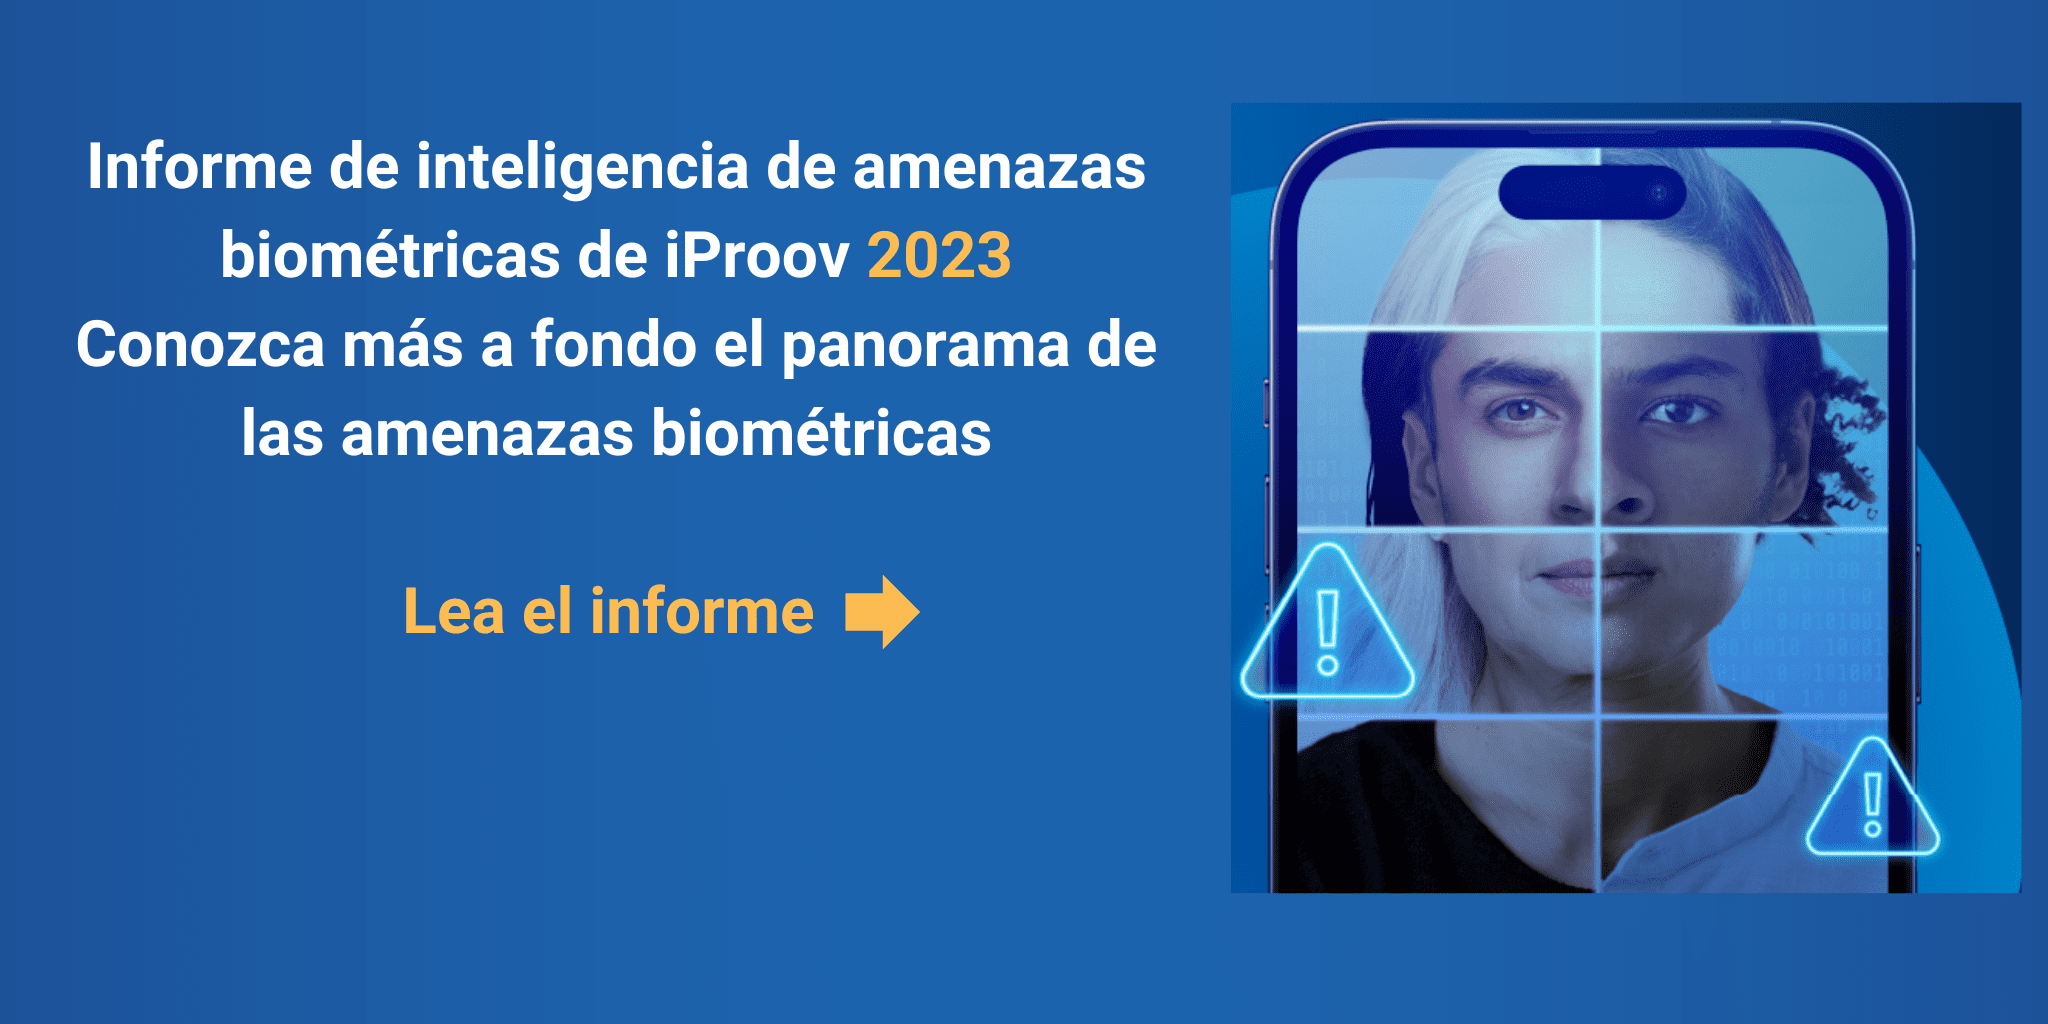 Informe de inteligencia de amenazas biometricas de iProov 2023 Conozca mas a fondo el panorama de las amenazas biometricas Lea el informe